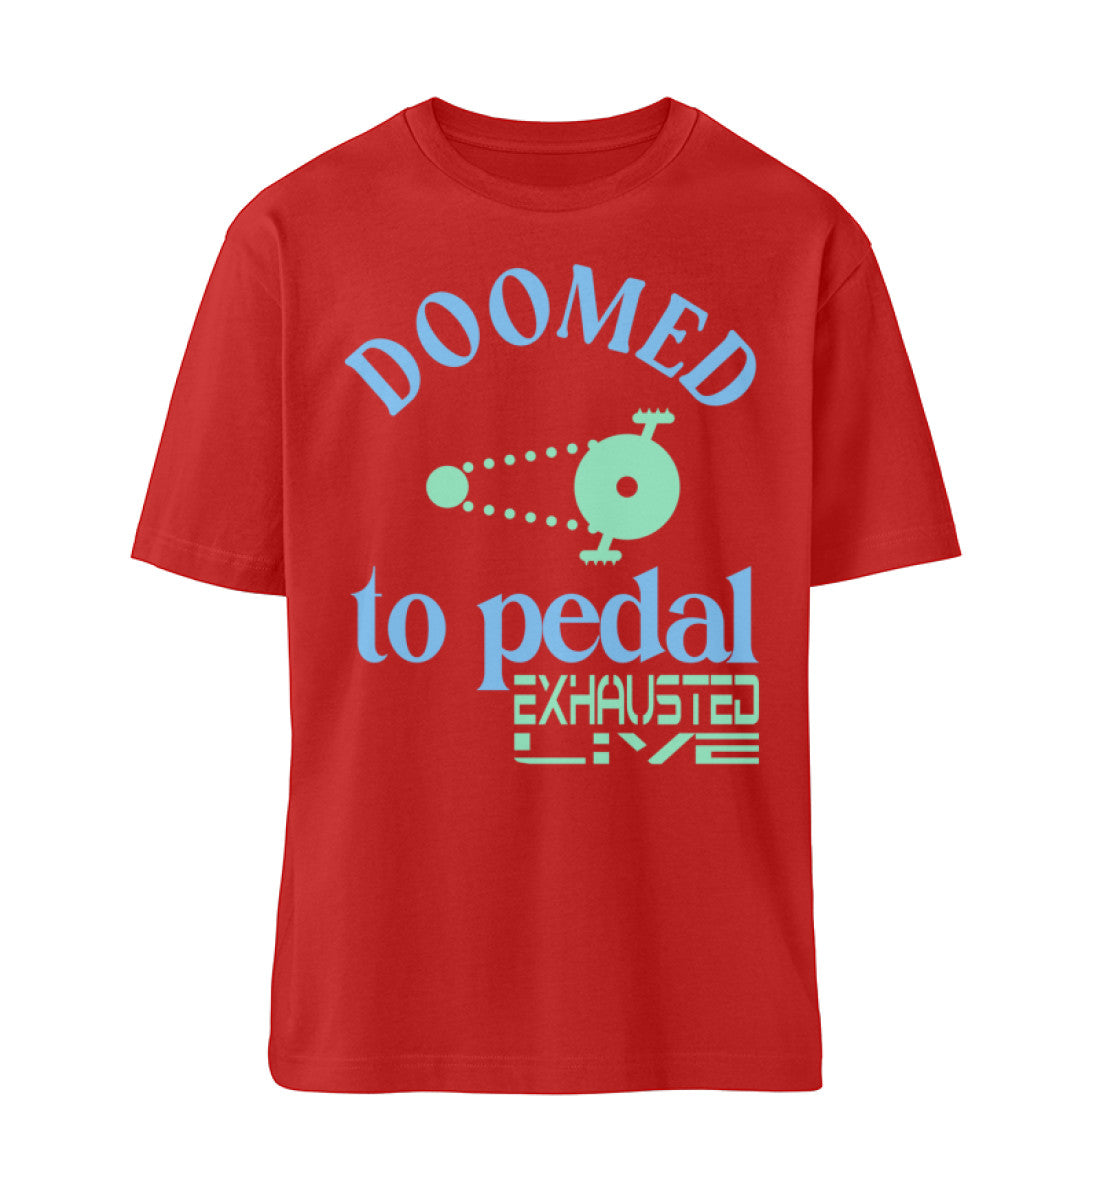 Rotes T-Shirt Unisex Relaxed Fit für Damen und Herren bedruckt mit dem Design der Roger Rockawoo Kollektion Mountainbike doomed to pedal